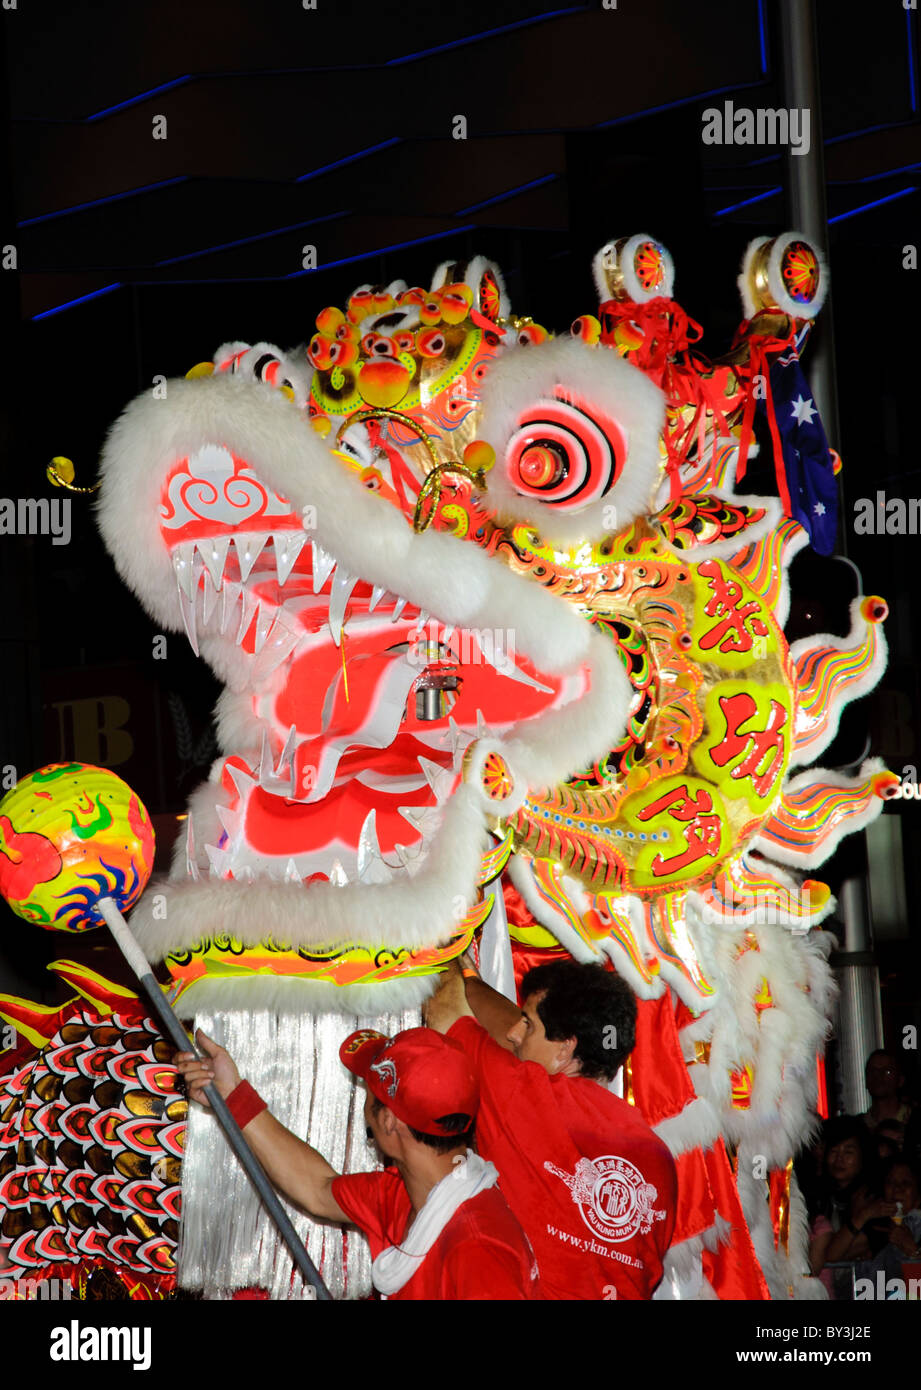 Ein großer Drache nimmt Teil an das Chinesische Neue Jahr twilight Parade in Sydney, Australien; Dragon dance; Chinese Dragon Kostüm; multi-cultural festival Stockfoto